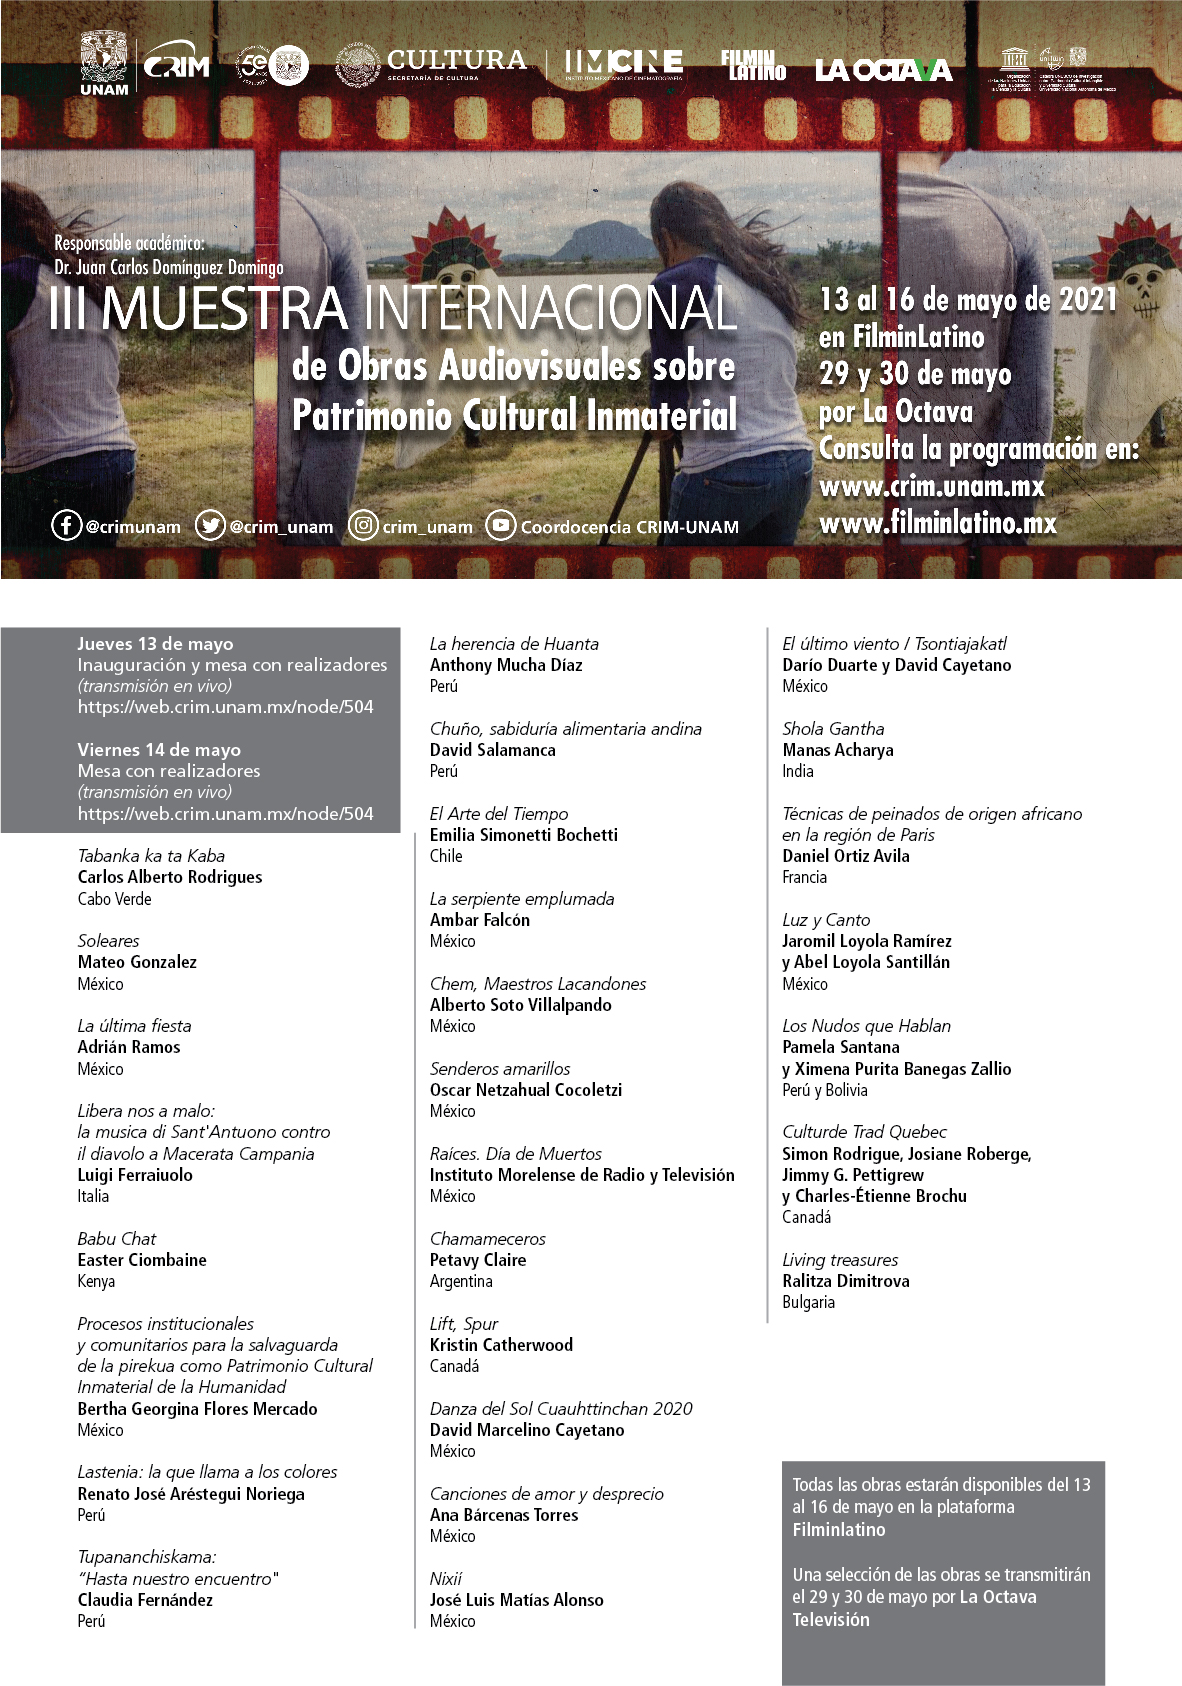 Muestra internacional de Obras Audiovisuales sobre Patrimonio Cultural Inmaterial